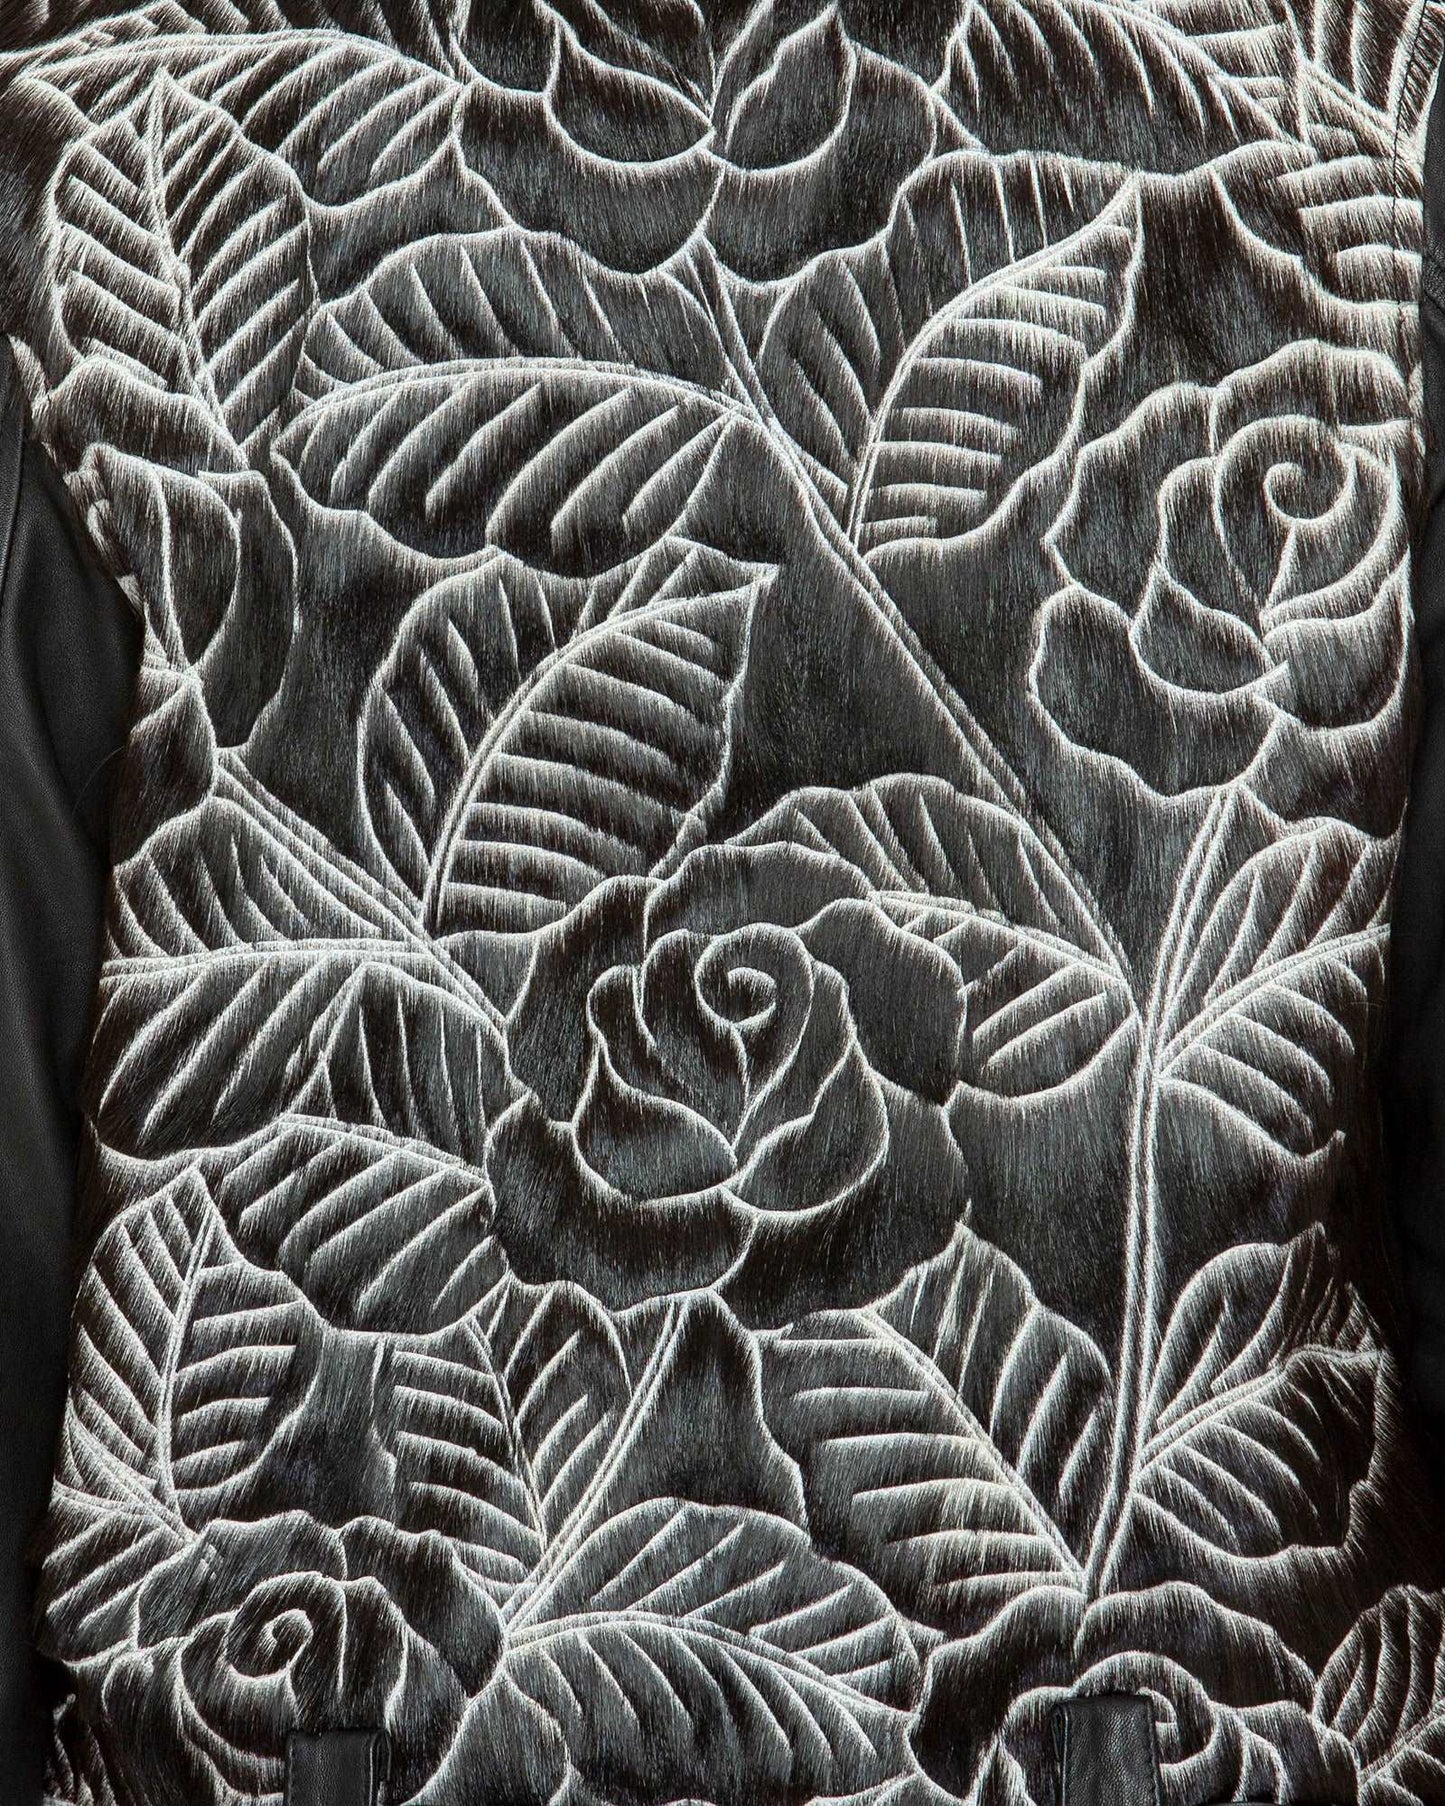 Carved Leather Biker Jacket - Black Rose